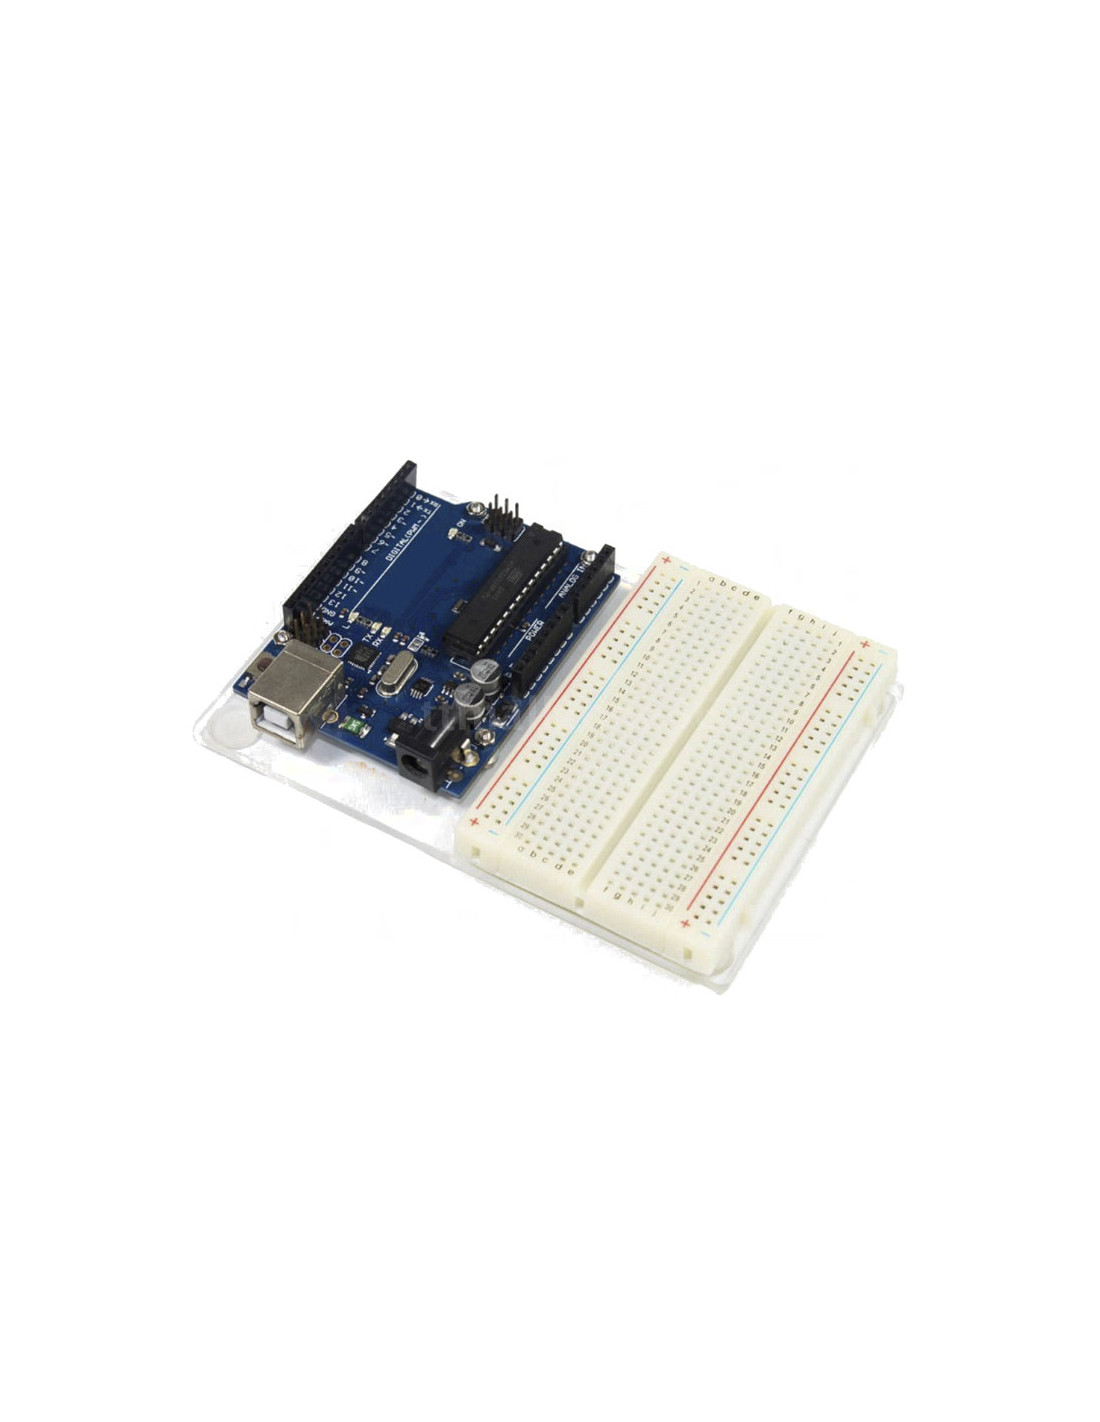 Placa de metacrilato para Protoboard de 400 + Arduino o Raspberry, solo la placa y tornillería